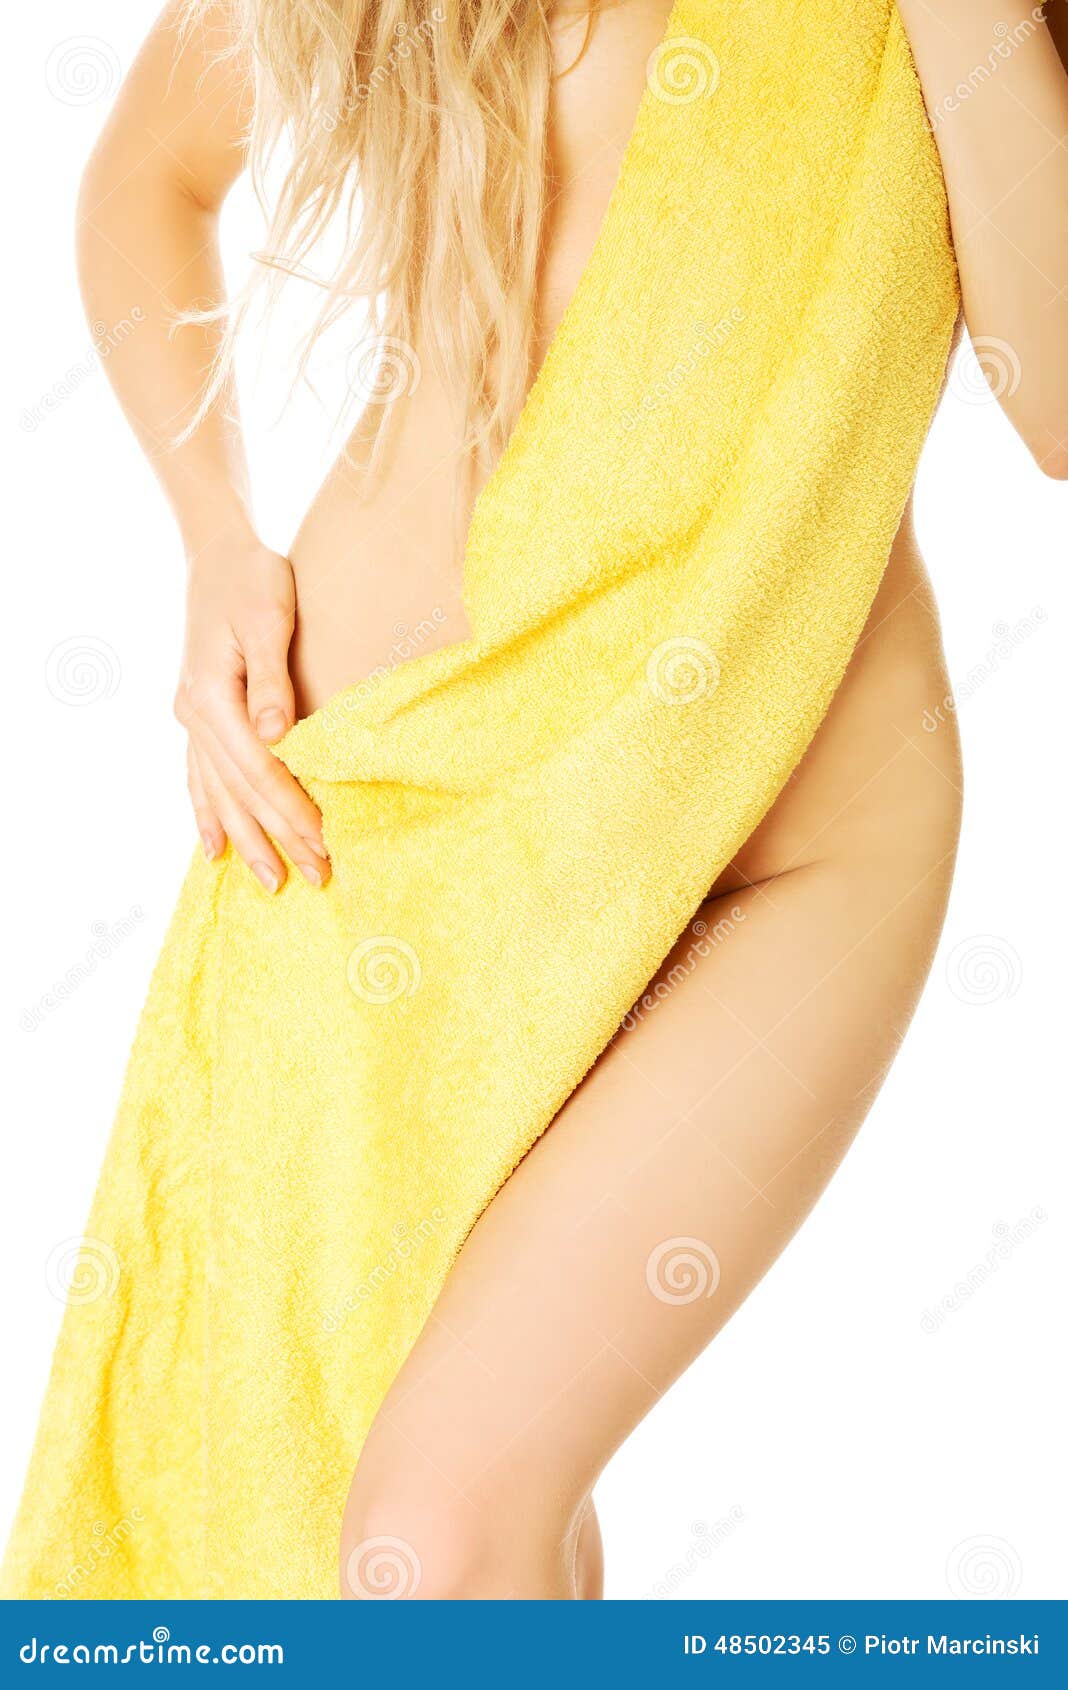 Живот полотенце. Девушка завернутая в полотенце. Женщина в одном полотенце. Женское тело в полотенце. Девушка замотанная в полотенце.